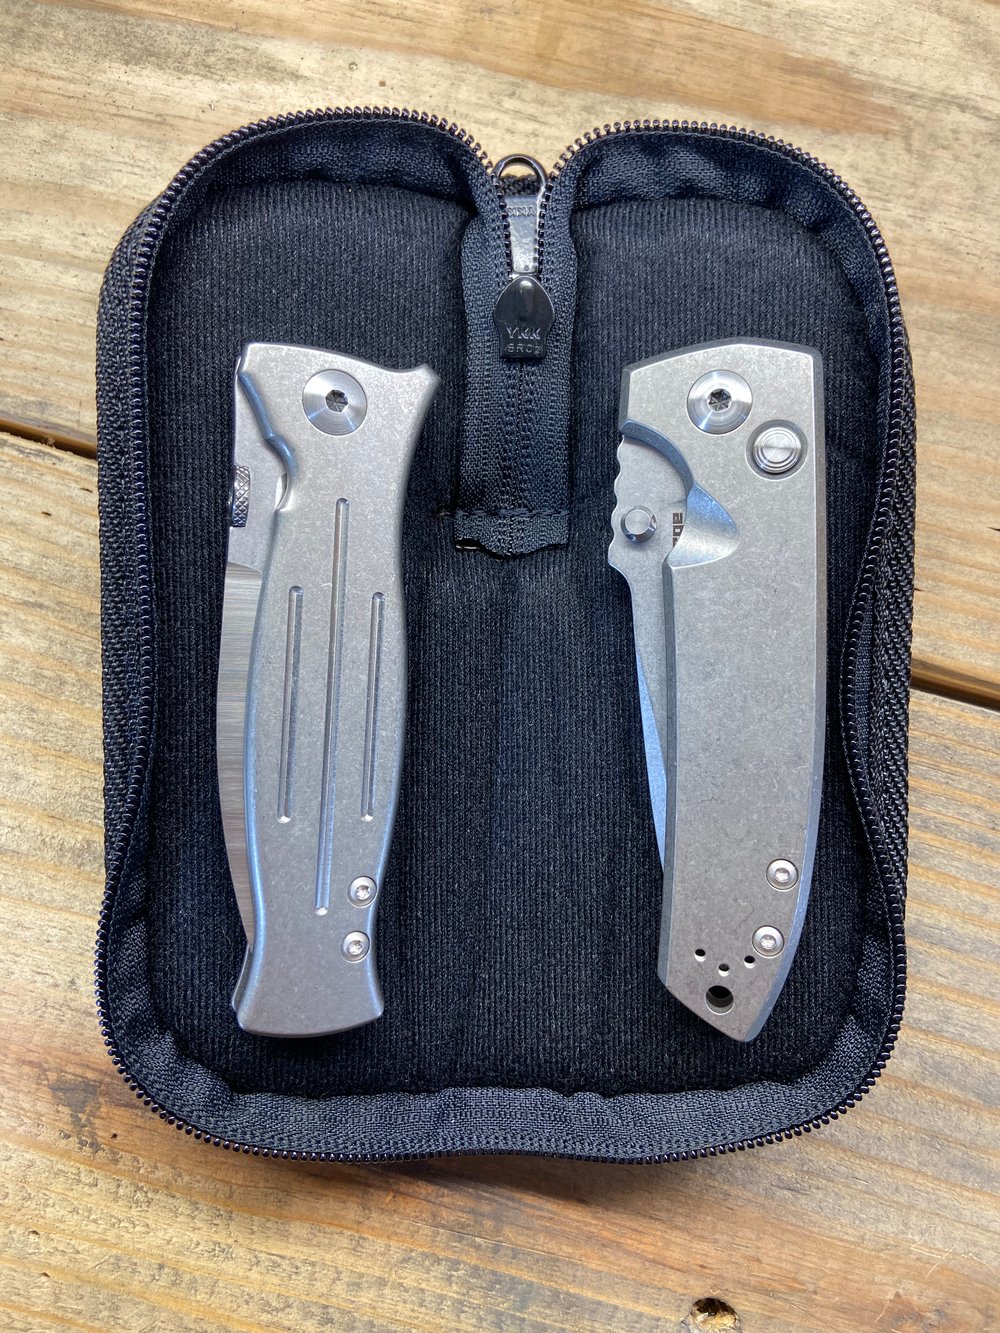 Knife Cases